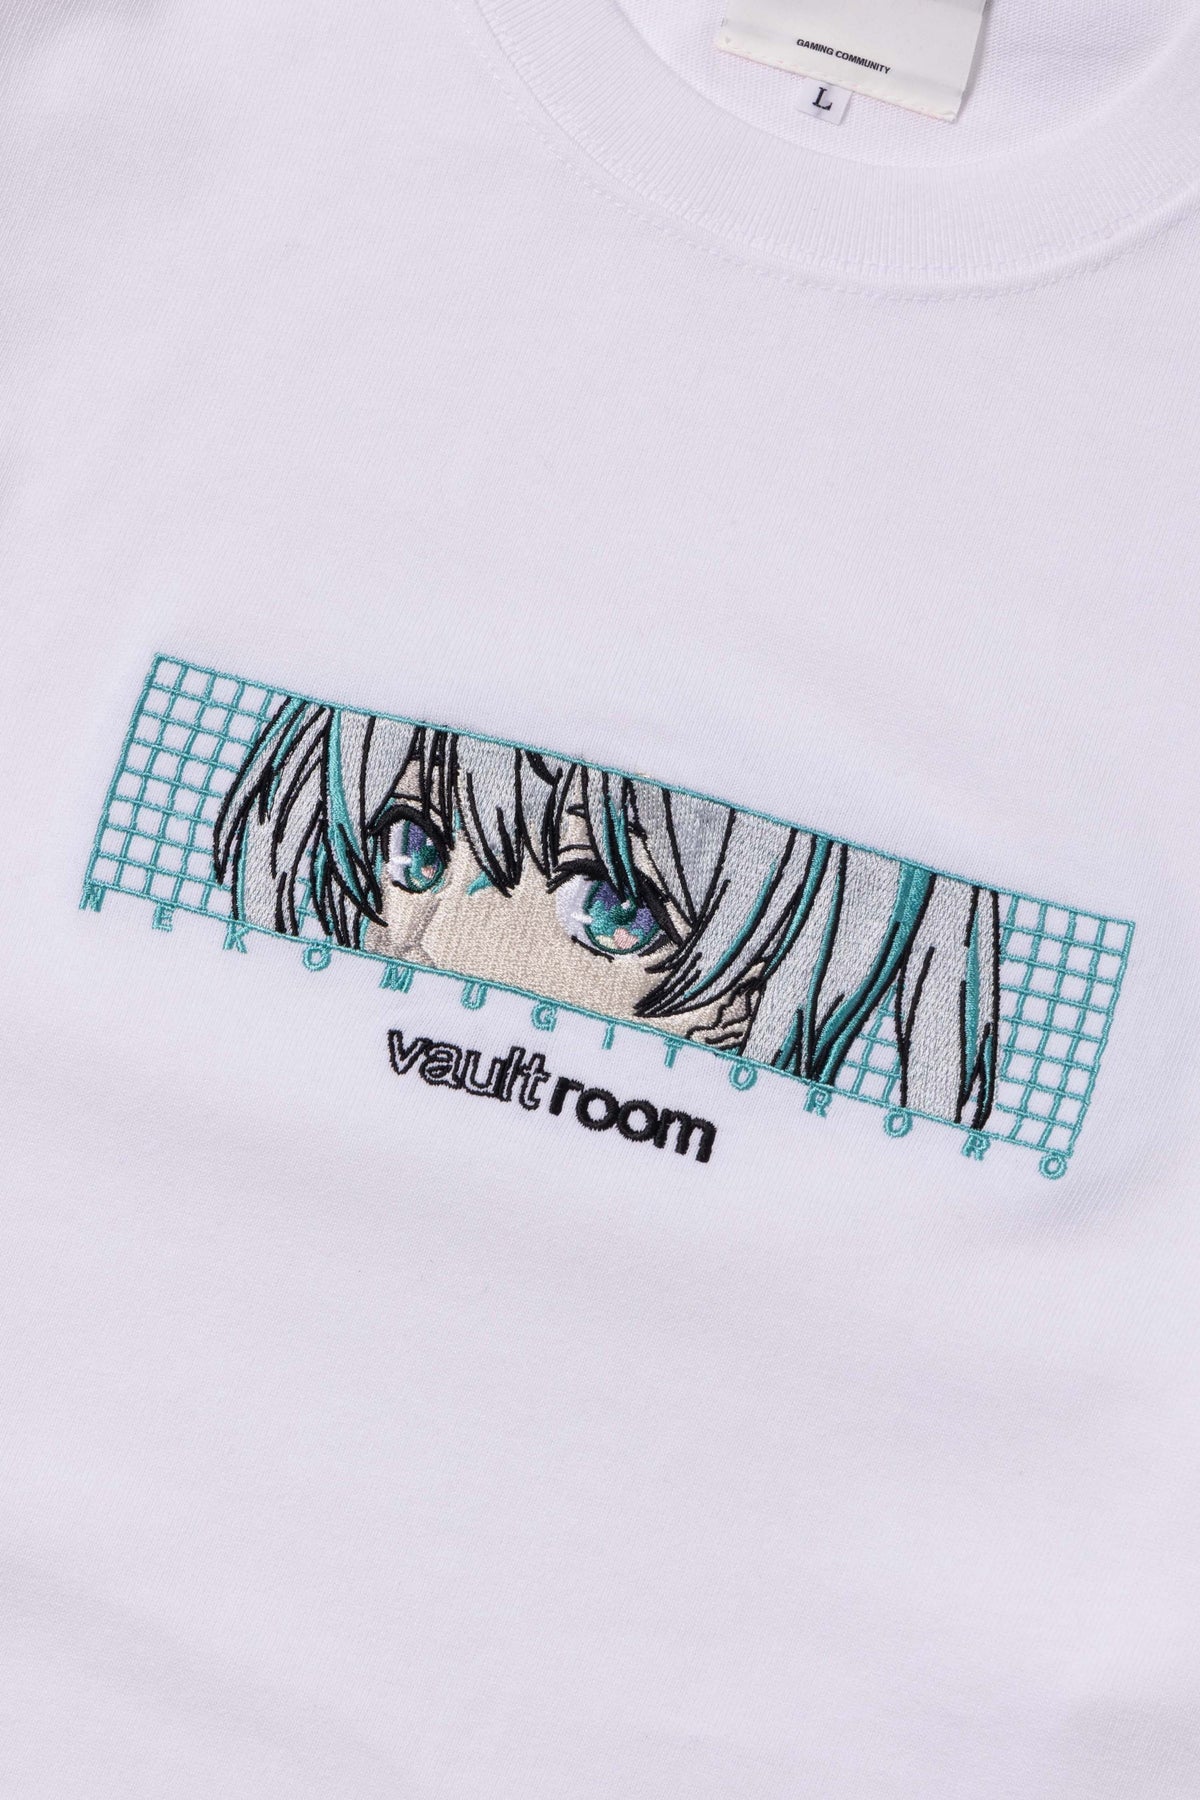 vaultroom × TORORO TEE 猫麦とろろ　Tシャツ ボルトルーム